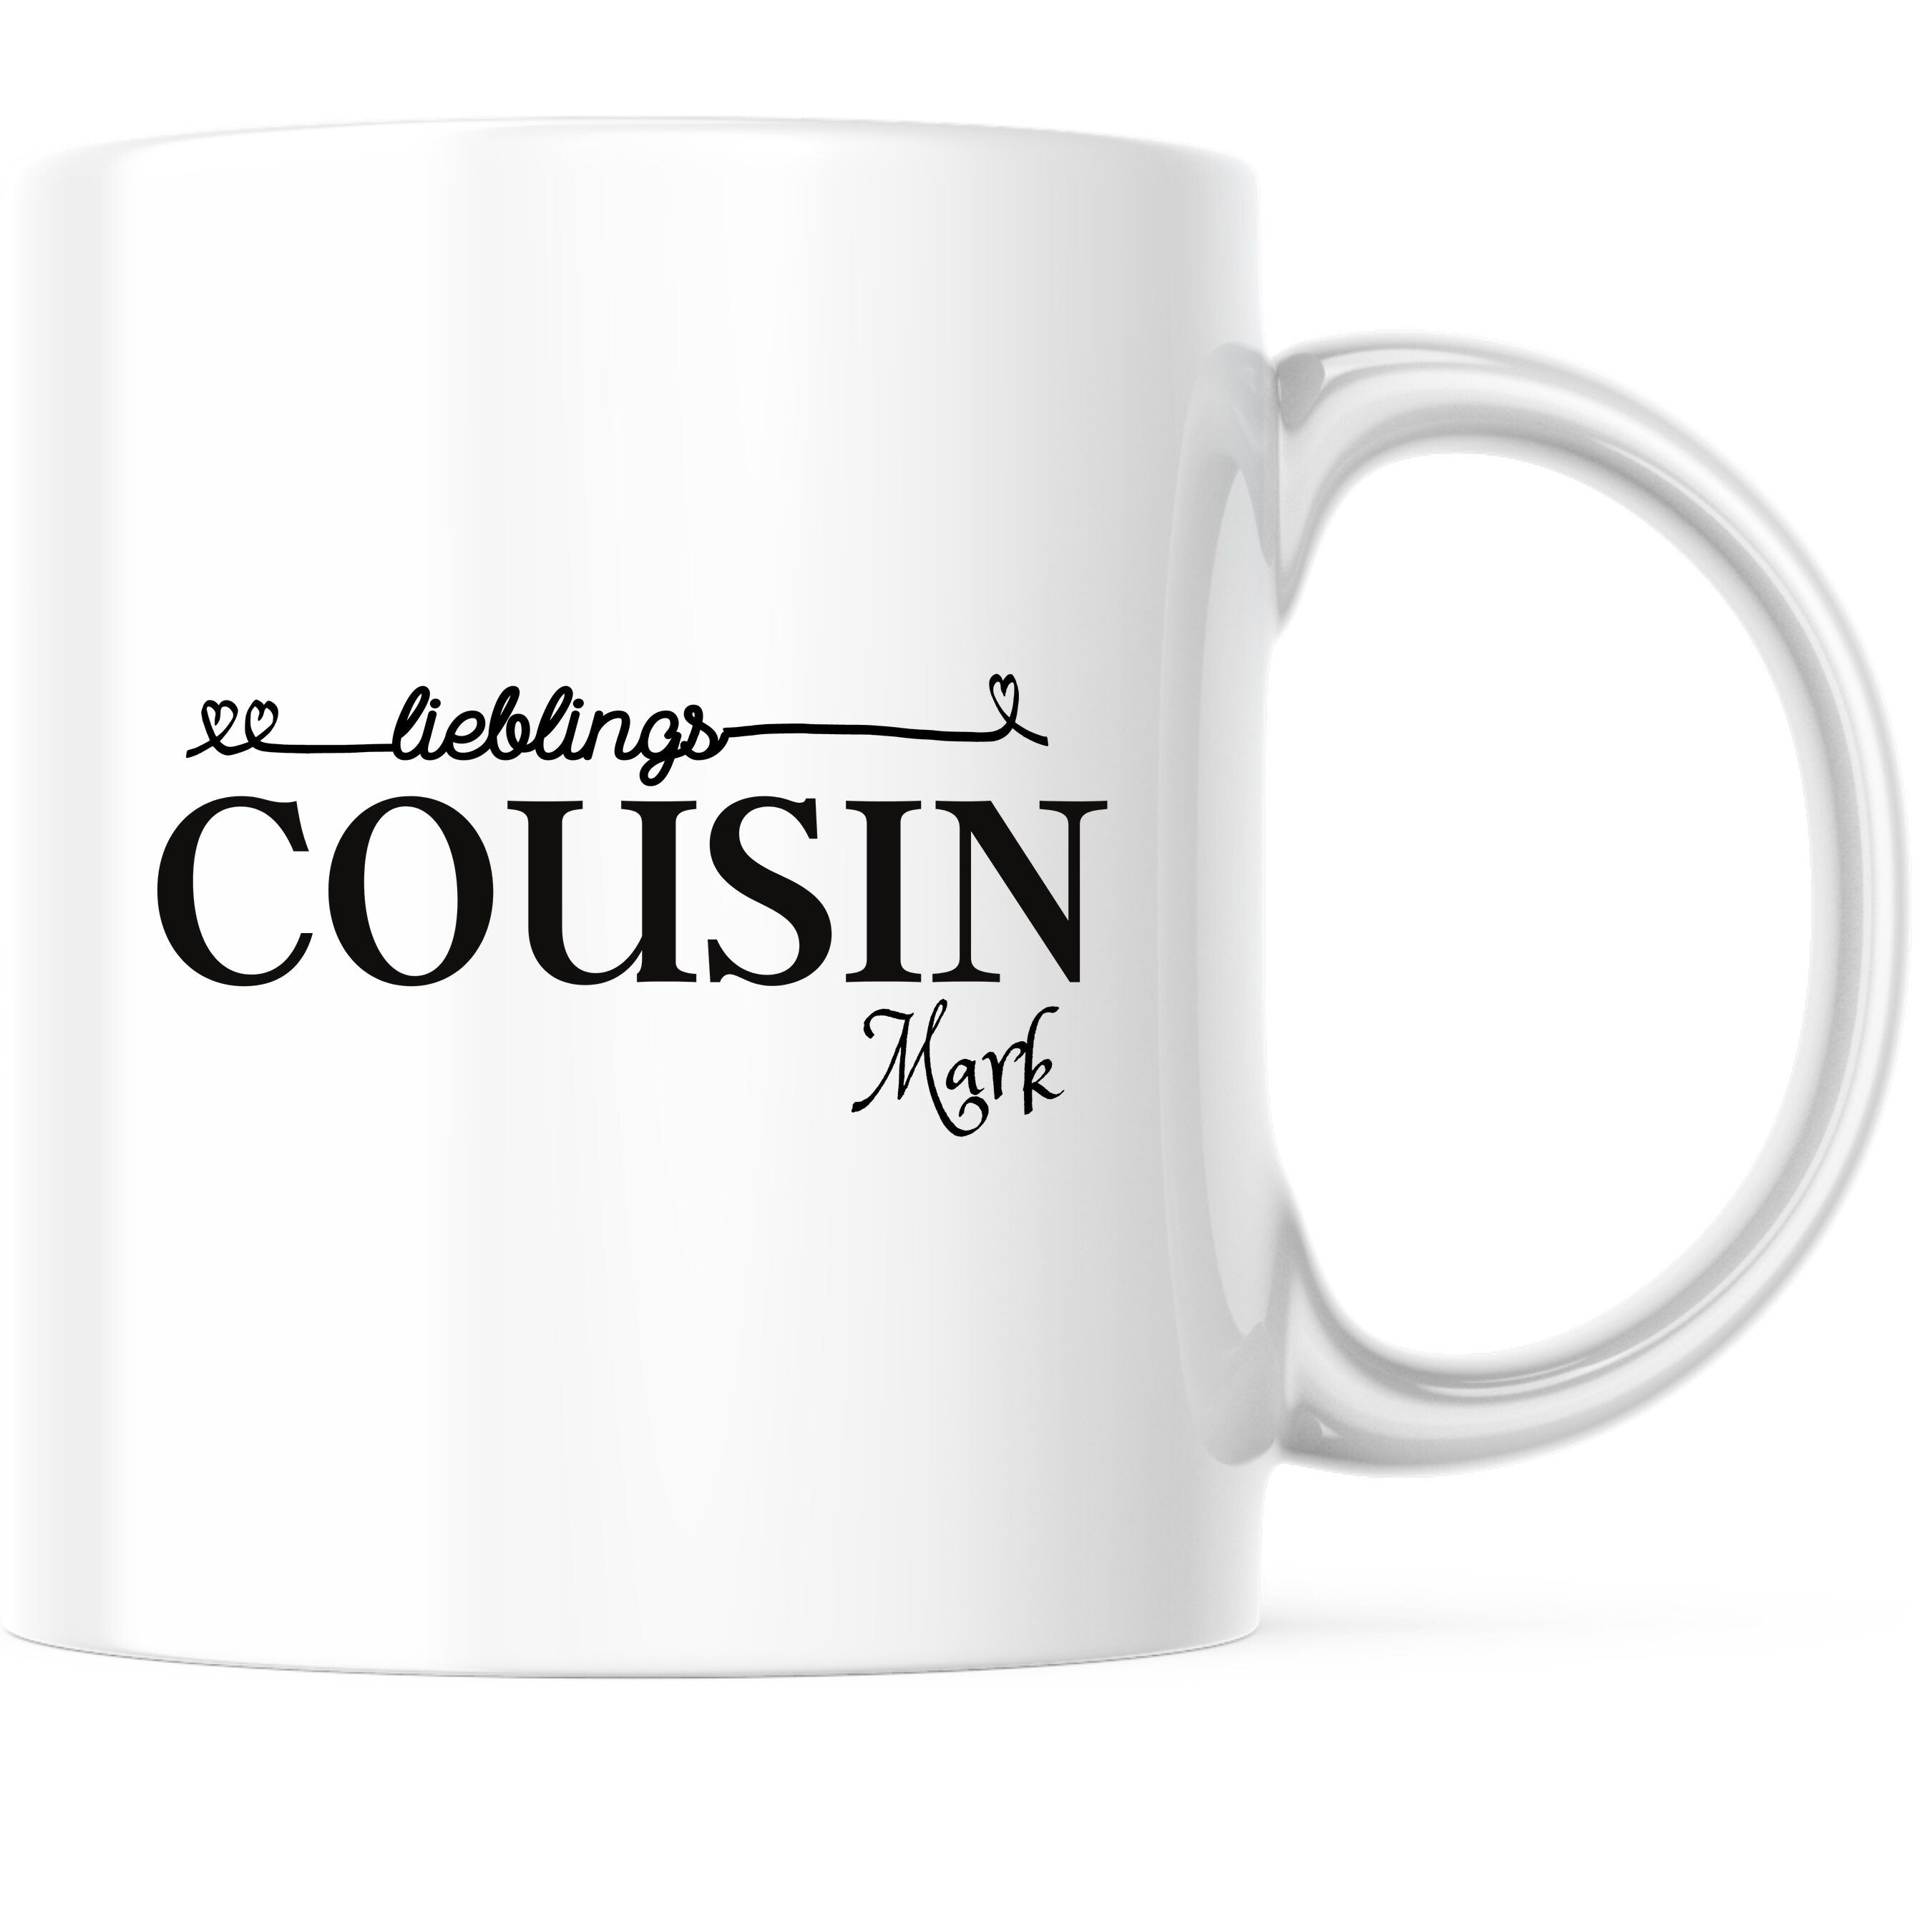 Tasse für den Cousin| Lieblingscousin Geschenk|personalisierbar mit Namen